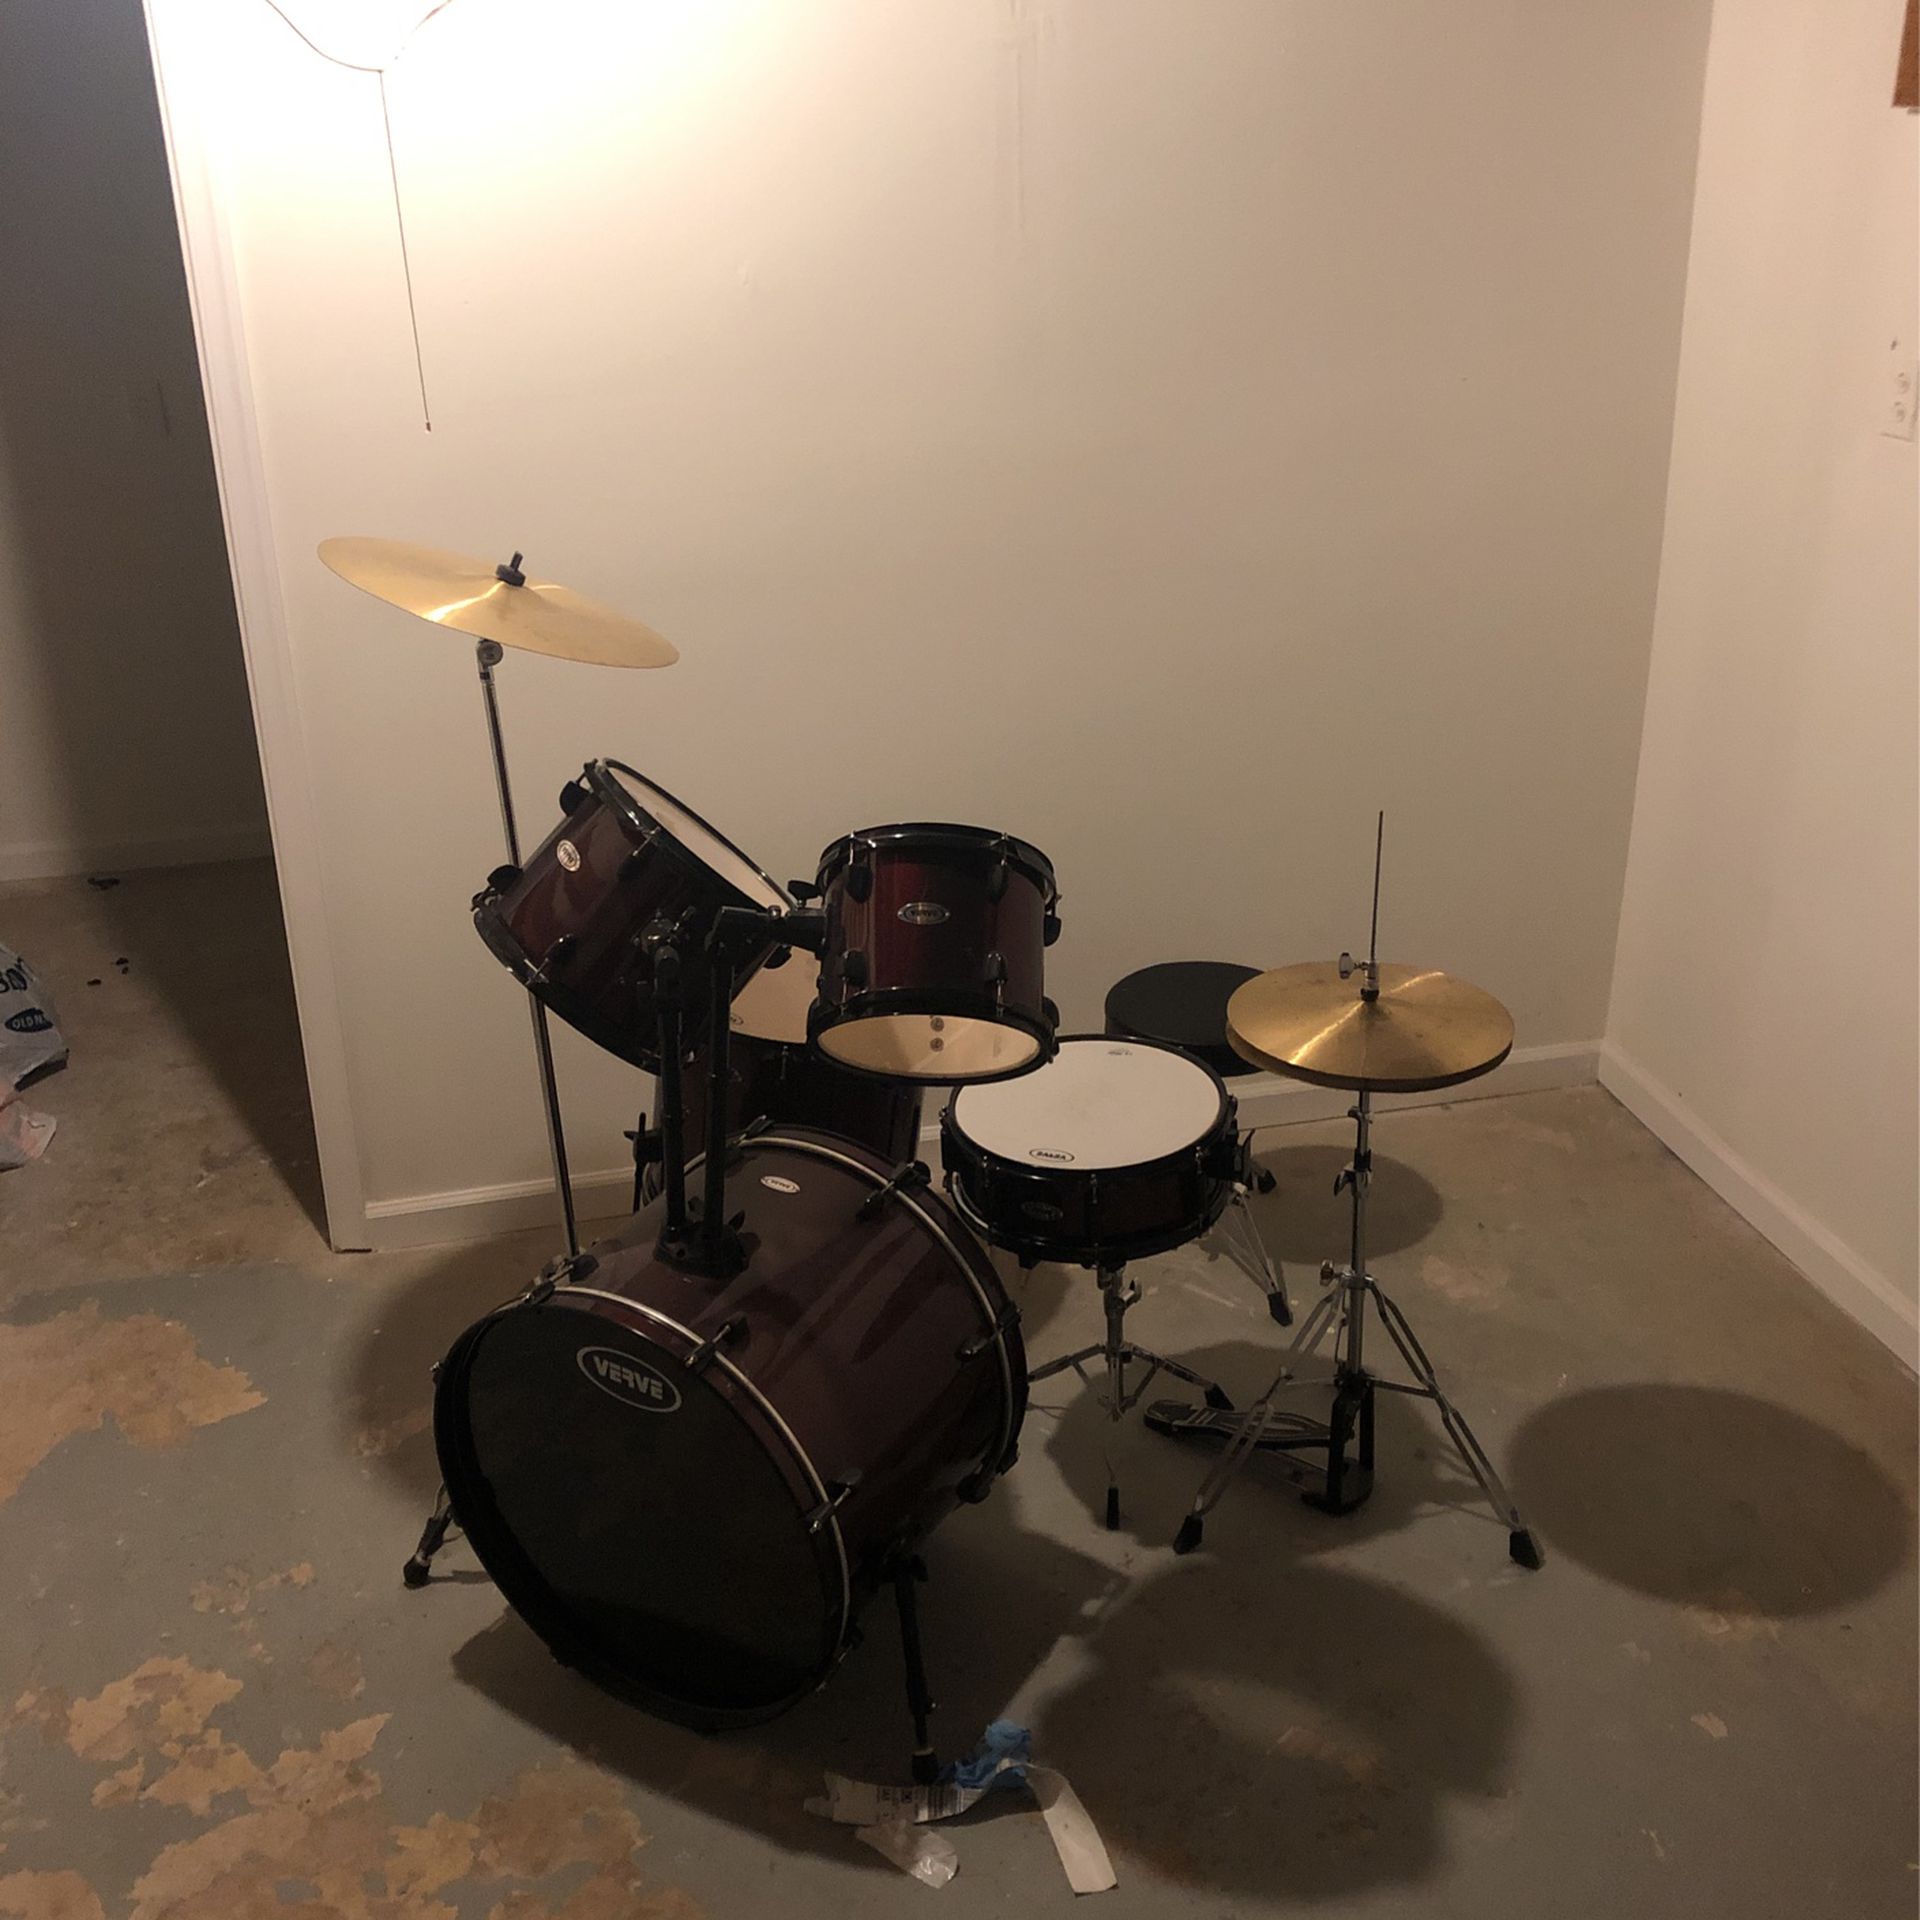 Used Verve Drum set 